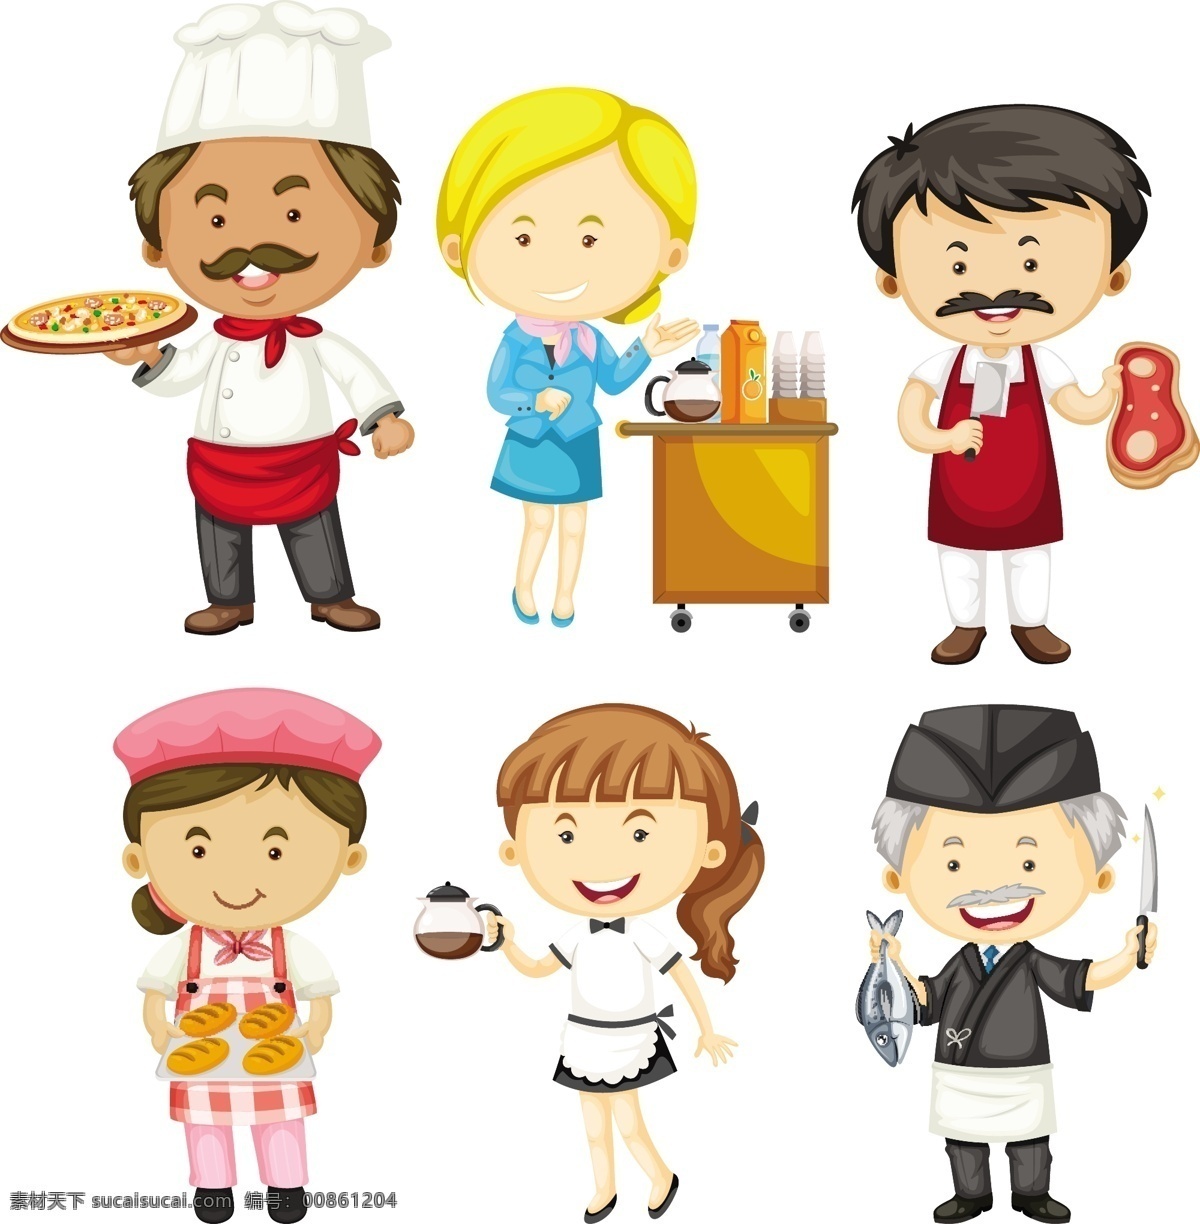 卡通厨师图片 卡通厨师 卡通餐饮人物 厨师 服务员 餐厅服务员 大厨 职业 人物素材 生活 矢量人物 餐饮人物 卡通儿童 卡通设计